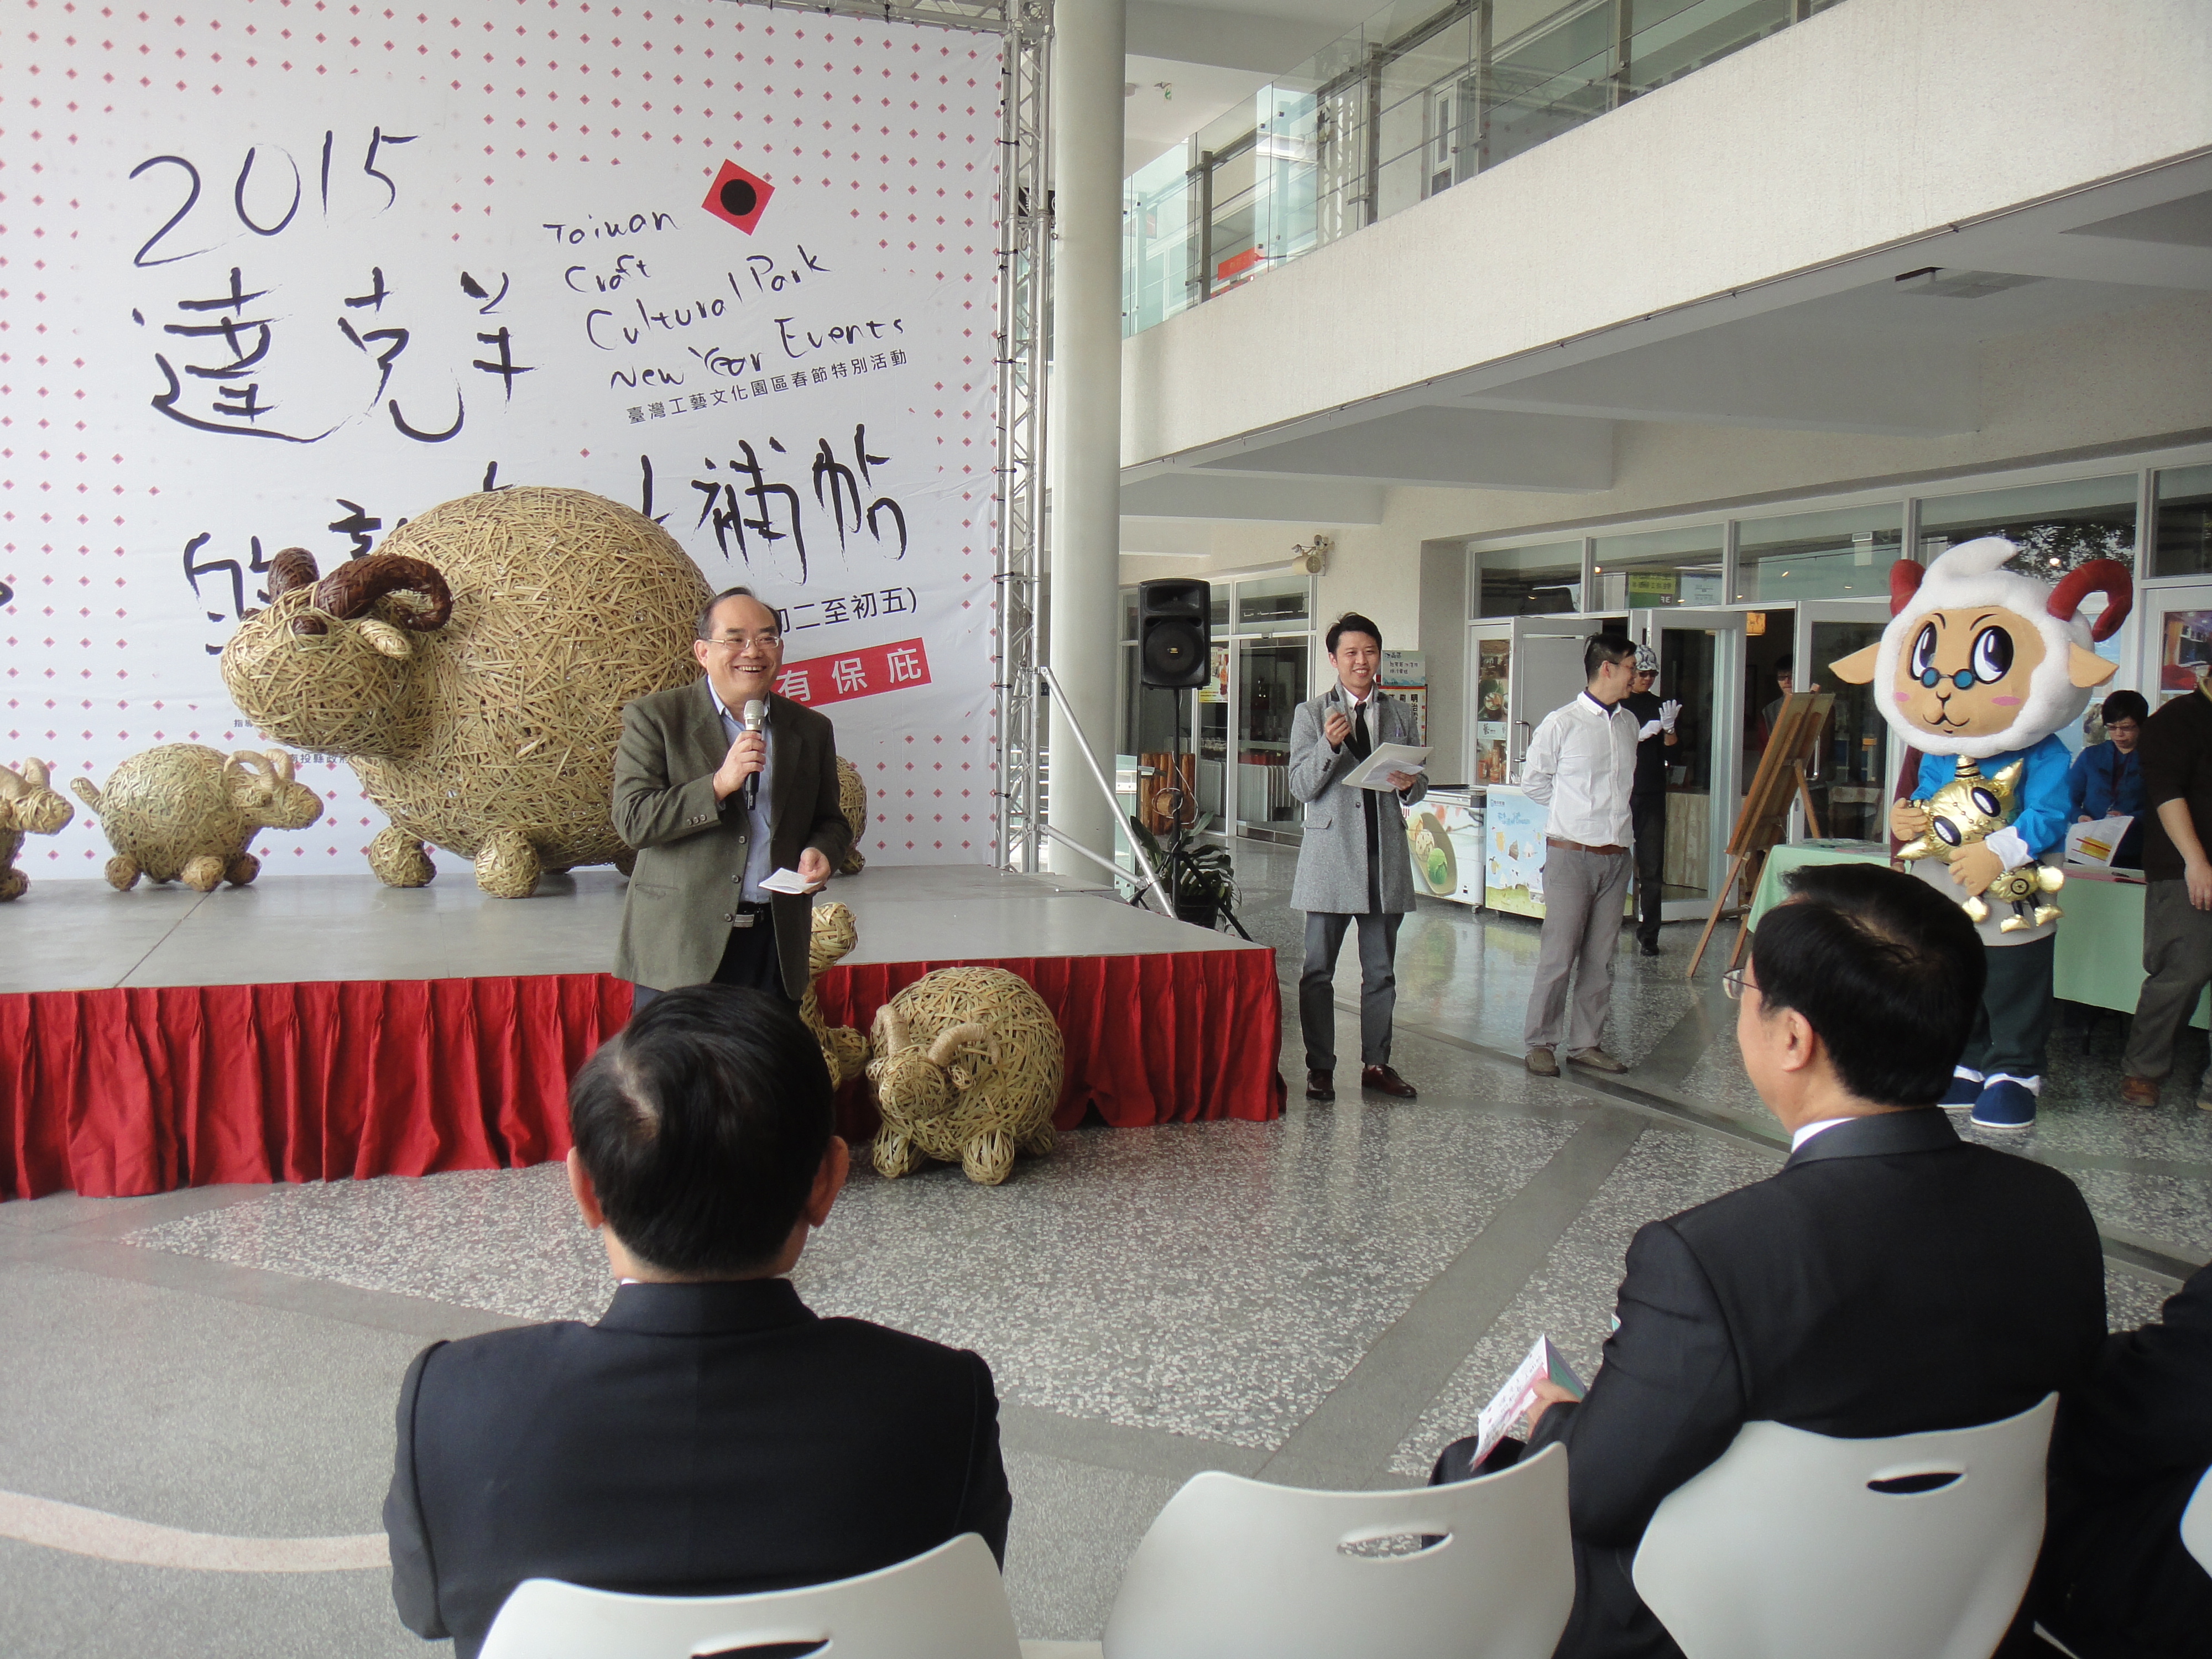 張鴻銘館長參加「2015達克羊的新春大補帖」活動揭幕儀式